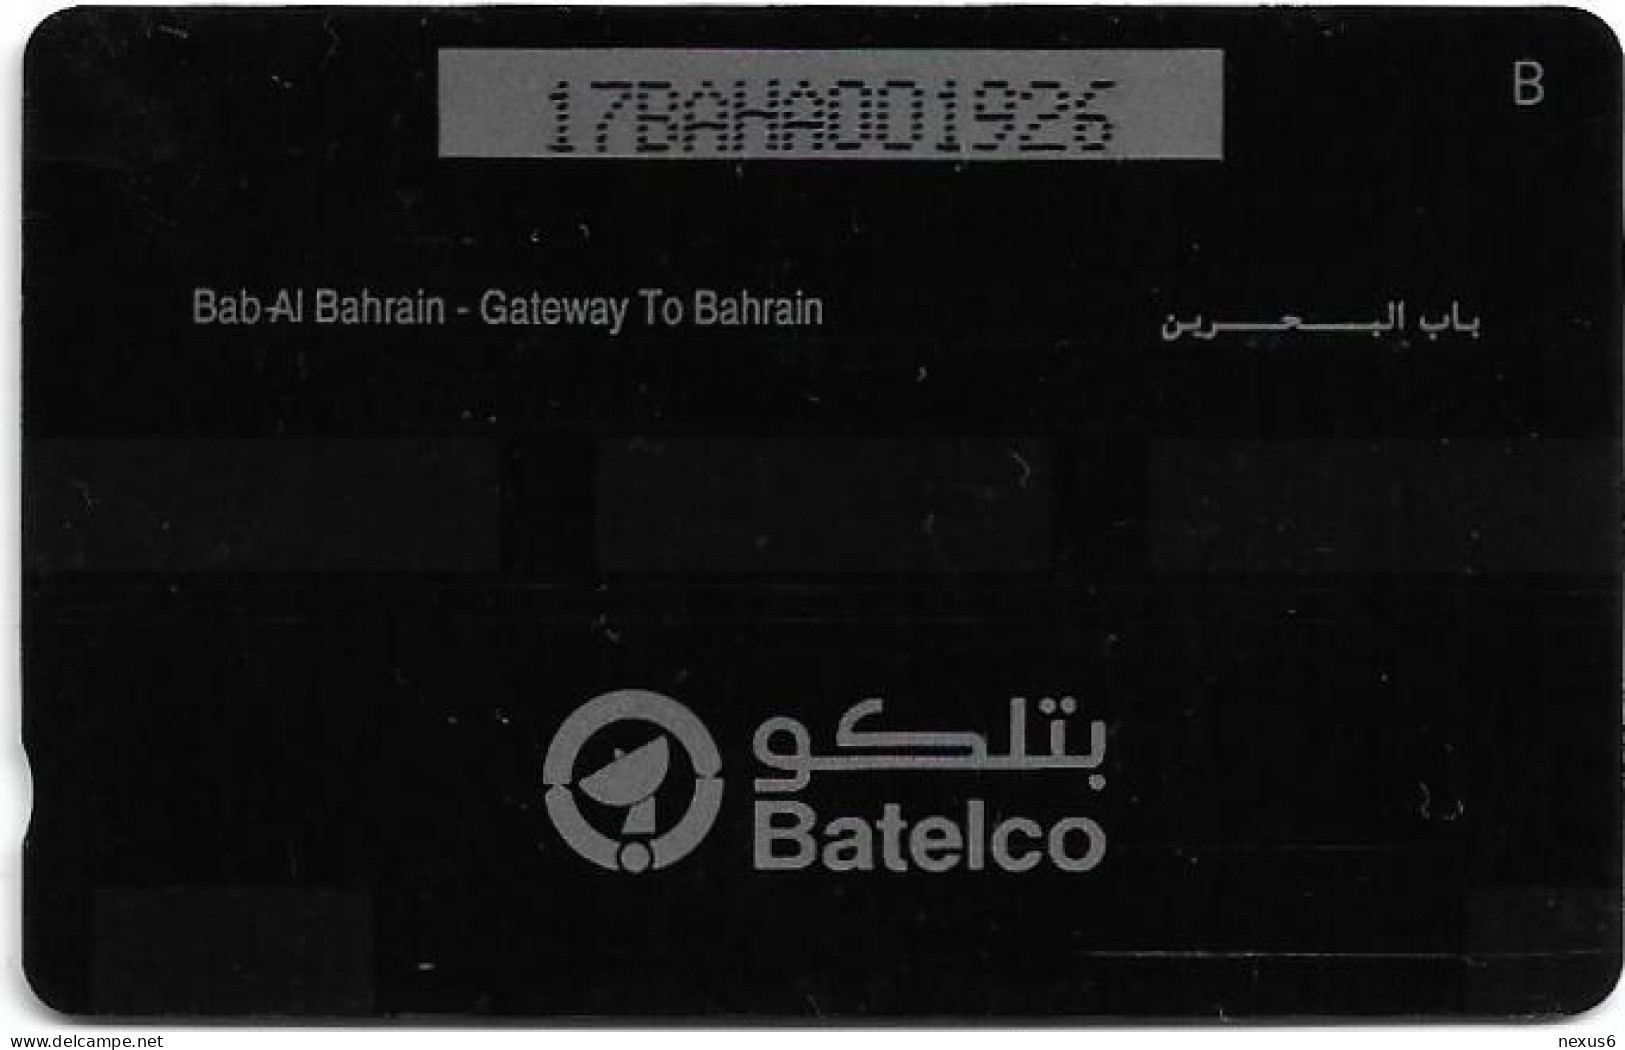 Bahrain - Batelco (GPT) - Gateway To Bahrain - 17BAHA - 1993, 130.000ex, Used - Bahrain